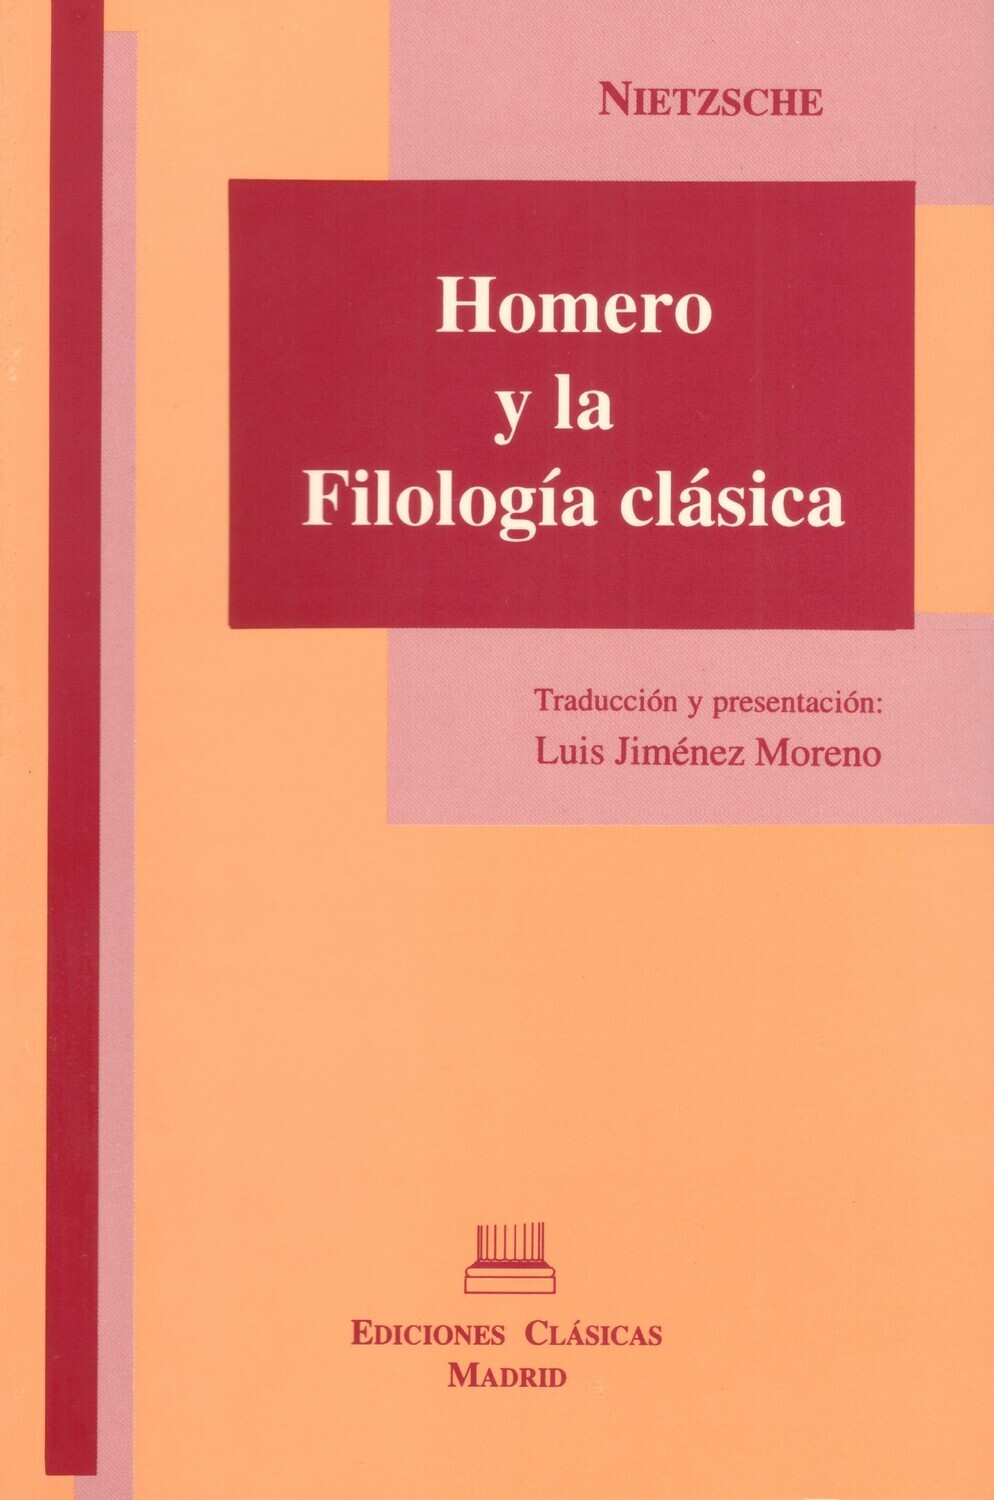 HOMERO Y LA FILOLOGÍA CLÁSICA (NIETZSCHE)